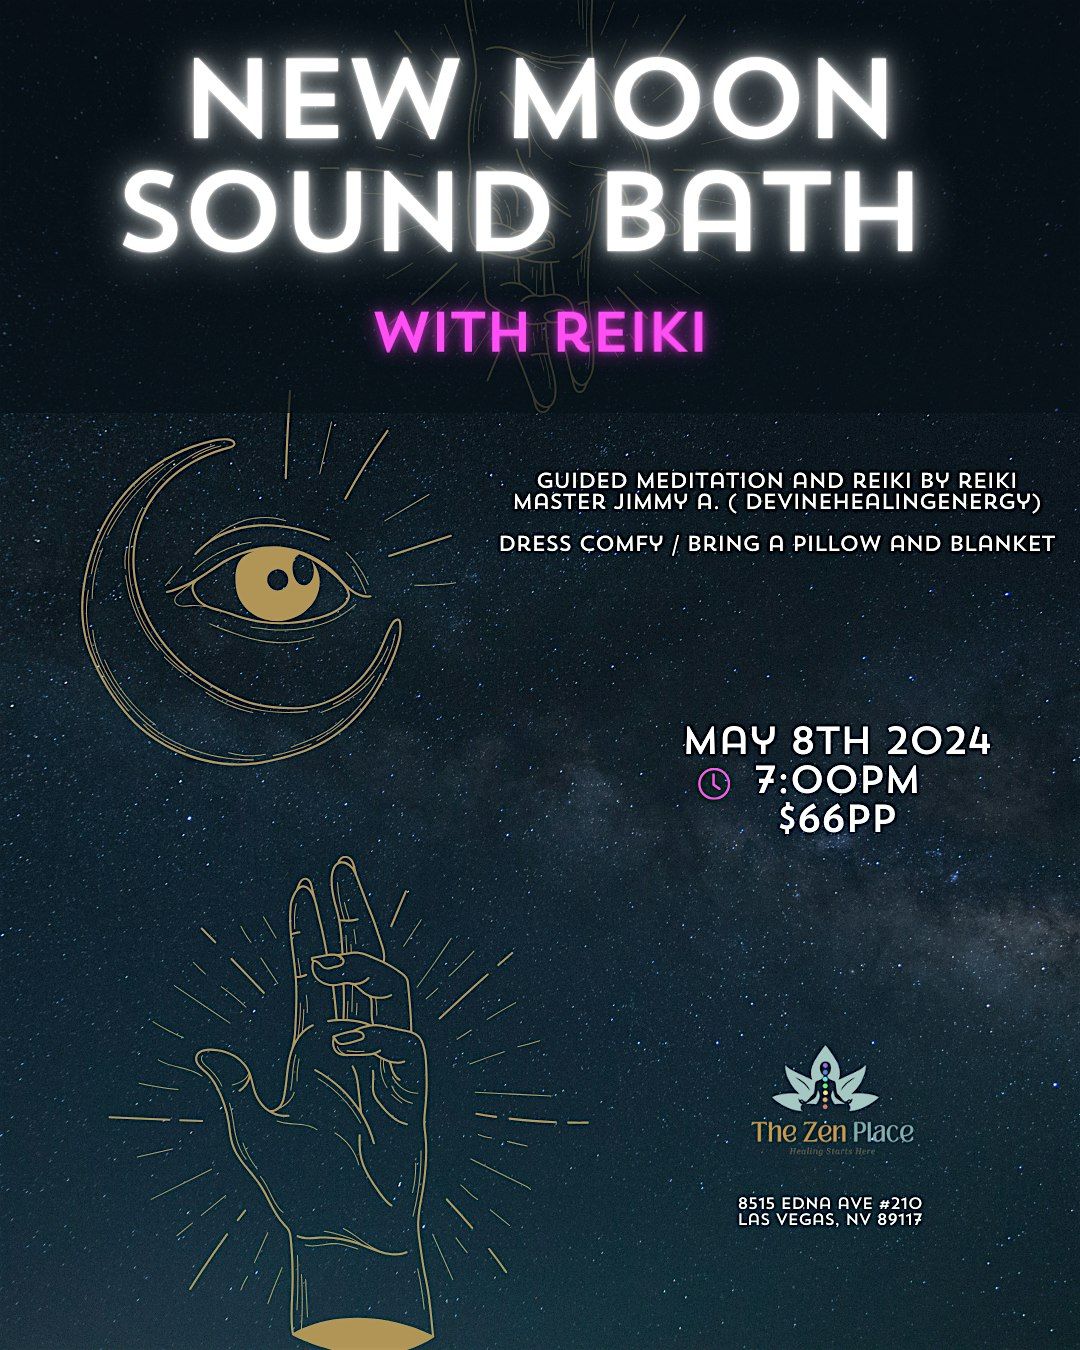 NEW MOON SOUND BATH WITH REIKI